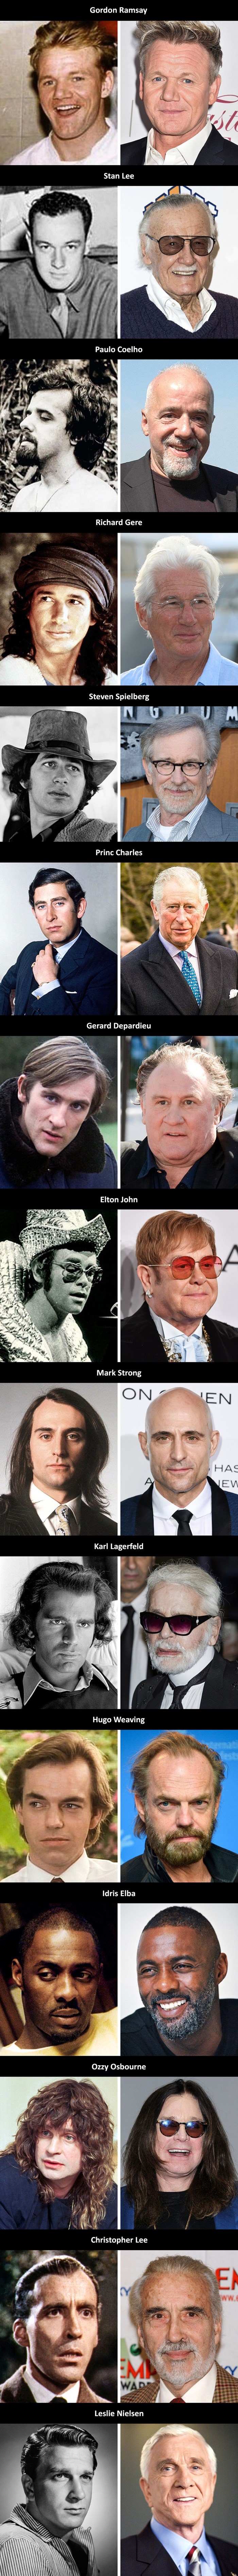 Evo kako su poznati muškarci izgledali kad su bili mlađi, razlike i sličnosti bi vas mogle iznenaditi